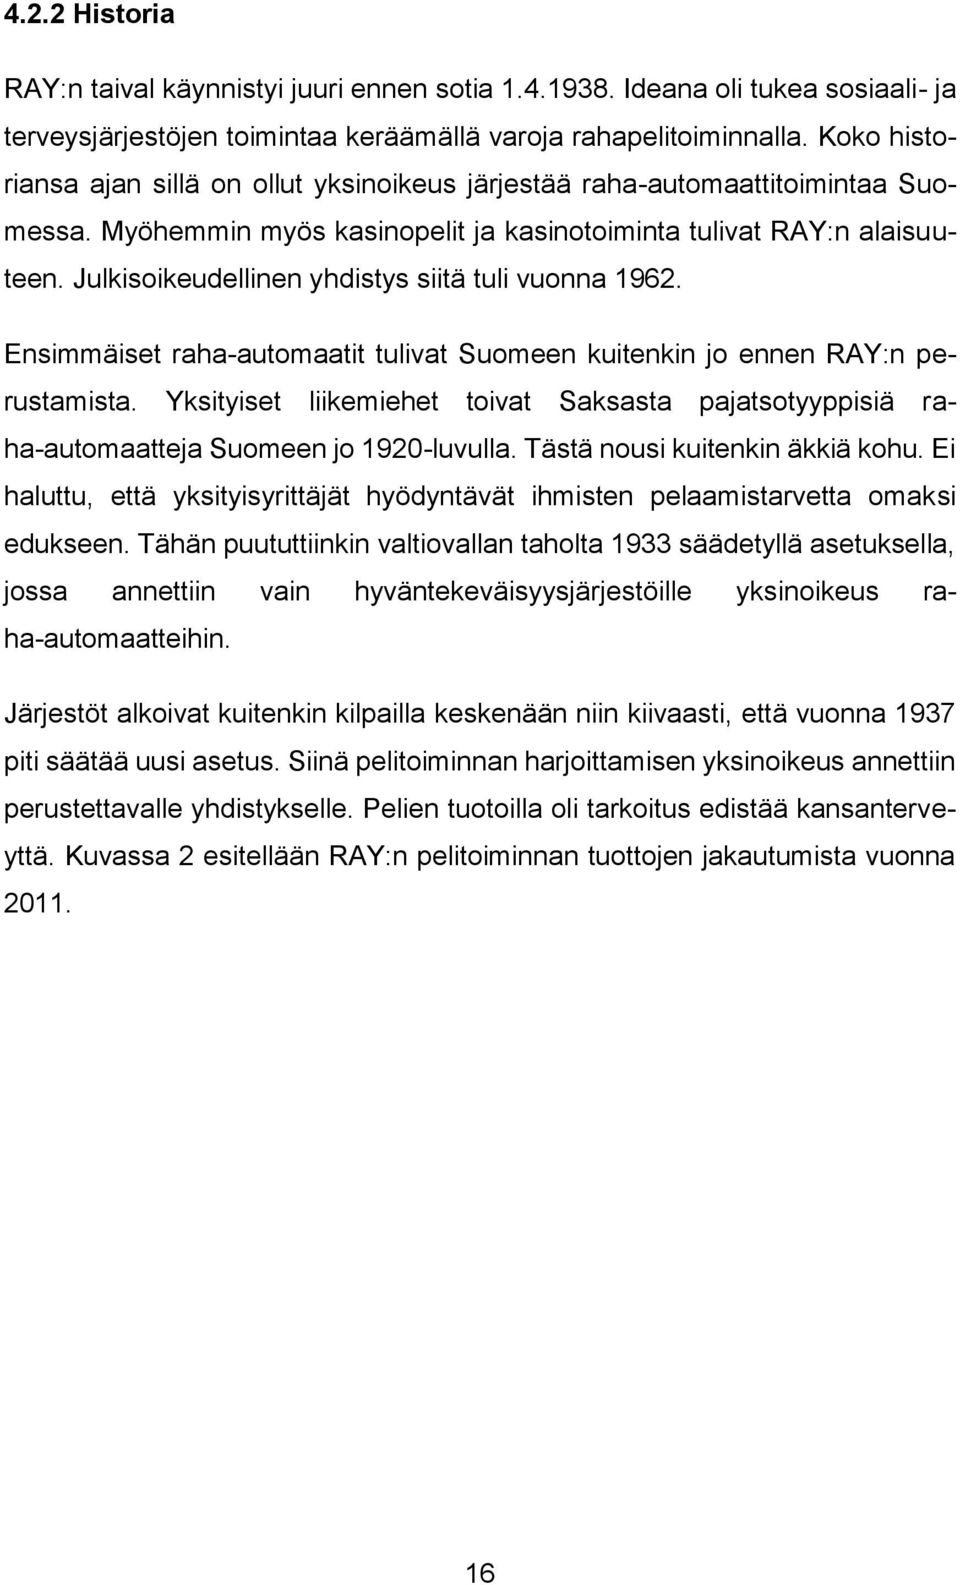 Julkisoikeudellinen yhdistys siitä tuli vuonna 1962. Ensimmäiset raha-automaatit tulivat Suomeen kuitenkin jo ennen RAY:n perustamista.